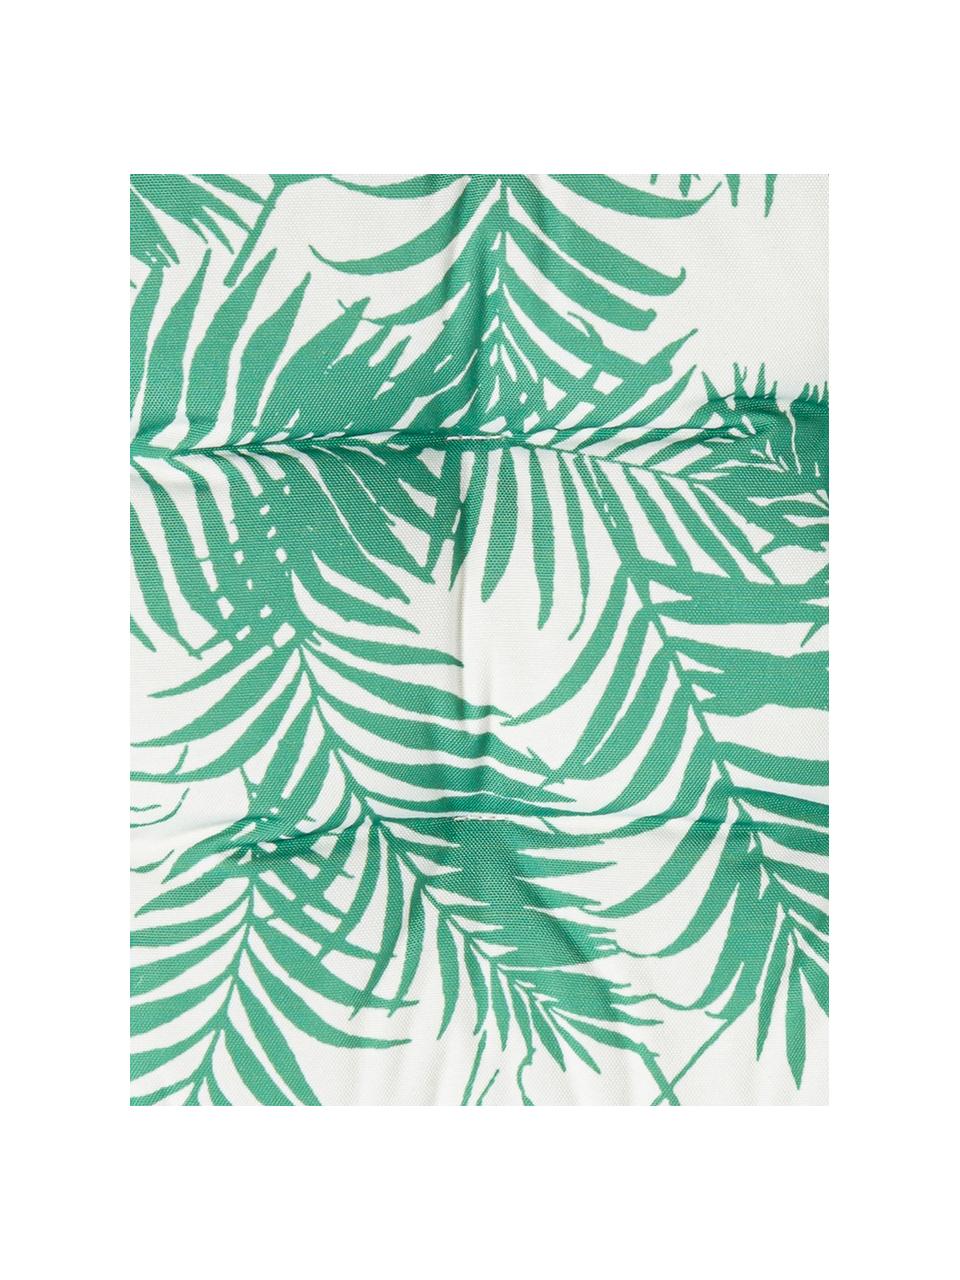 Outdoor stoelkussen Gomera  met bladpatroon, 100% polyester, Wit, groen, 40 x 40 cm